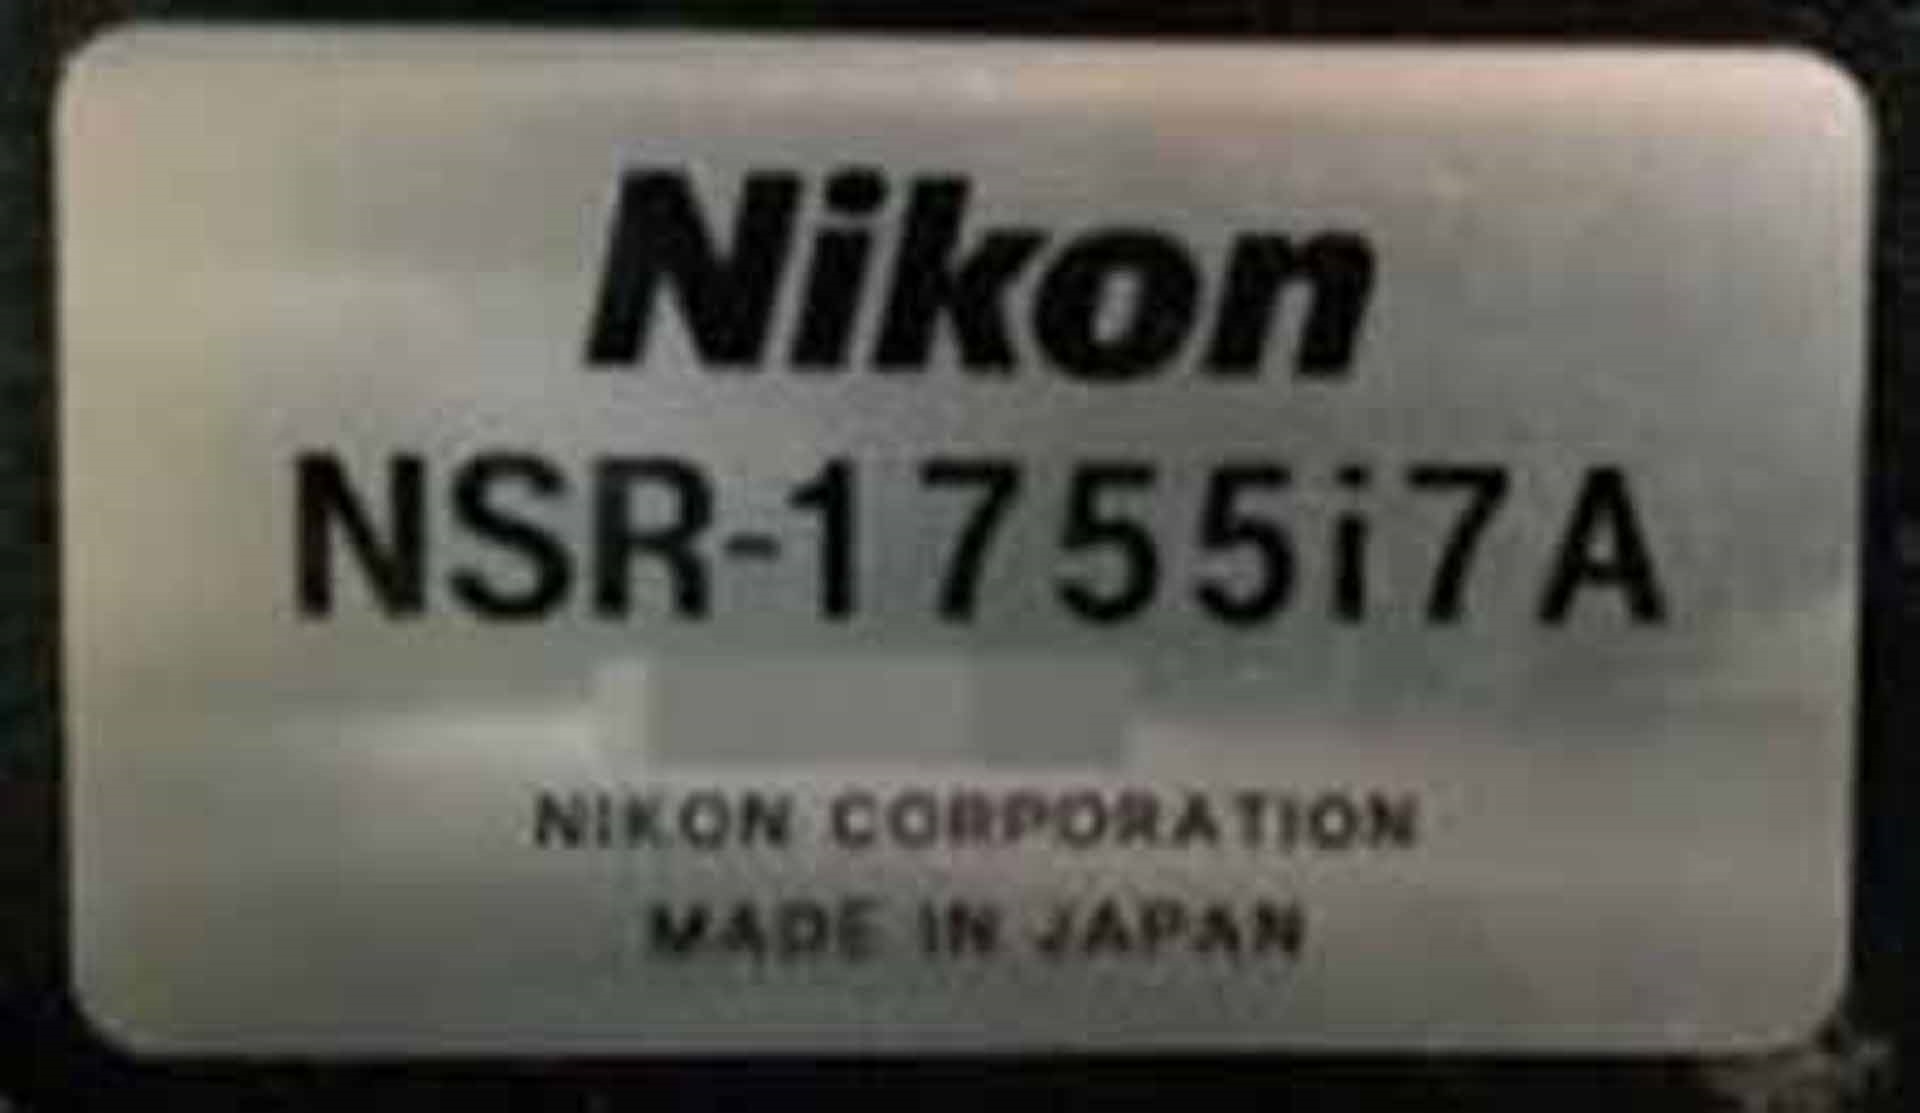 フォト（写真） 使用される NIKON NSR 1755 i7A 販売のために